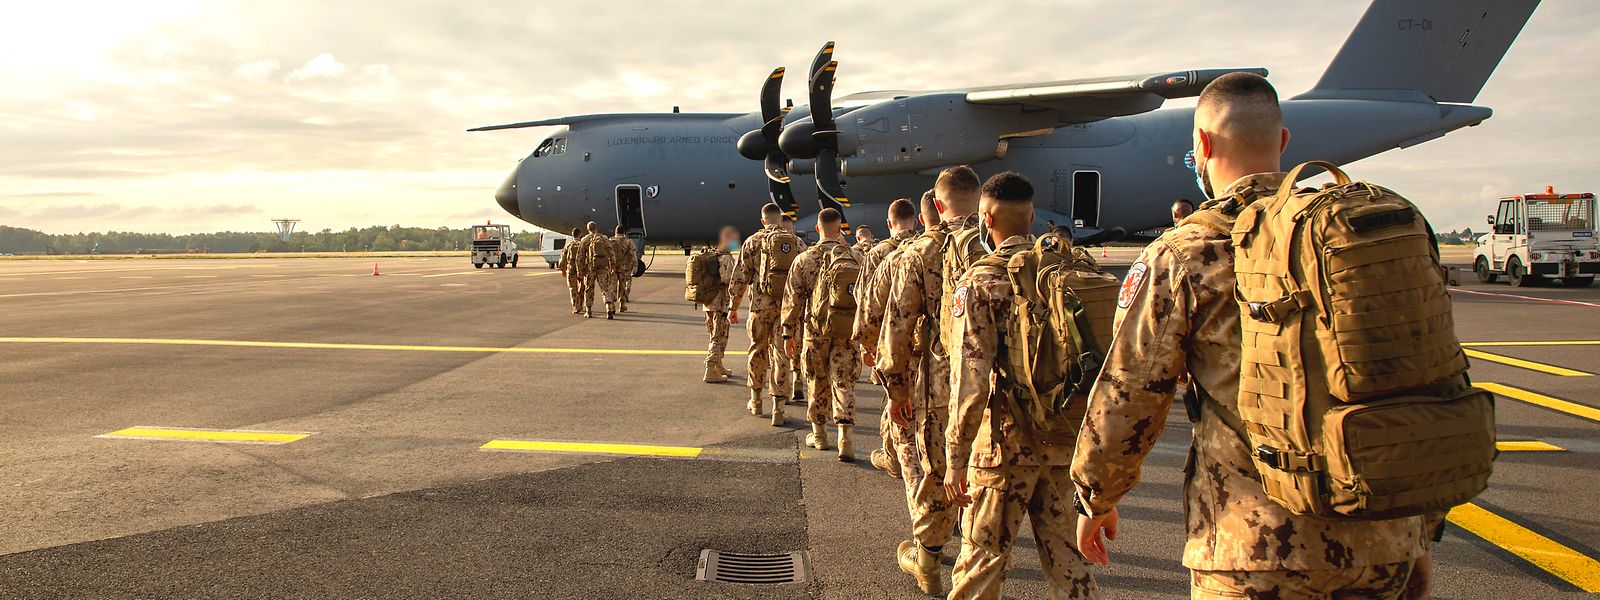 Vom Findel aus starteten im Juni 2021 luxemburgische Soldaten in Richtung Mali.
